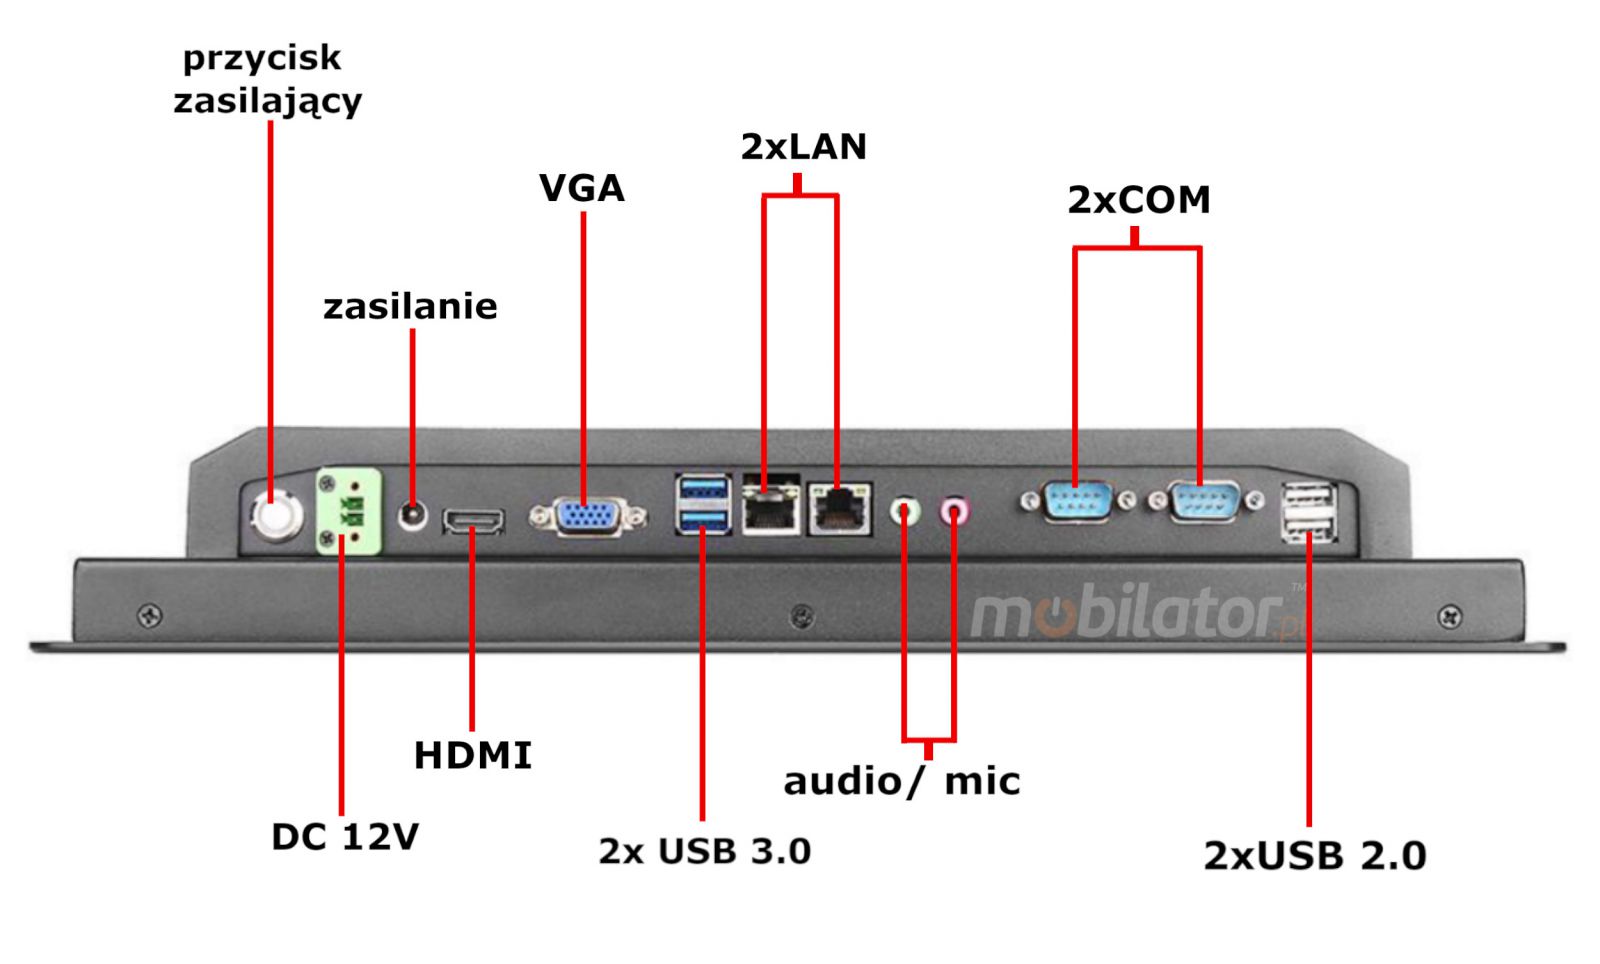 BIBOX-190PC2 zcza: 2x USB 2.0| 2xUSB 3.0 |2x COM | 4x LAN| 1x VGA | 1x HDMI |DC 12V